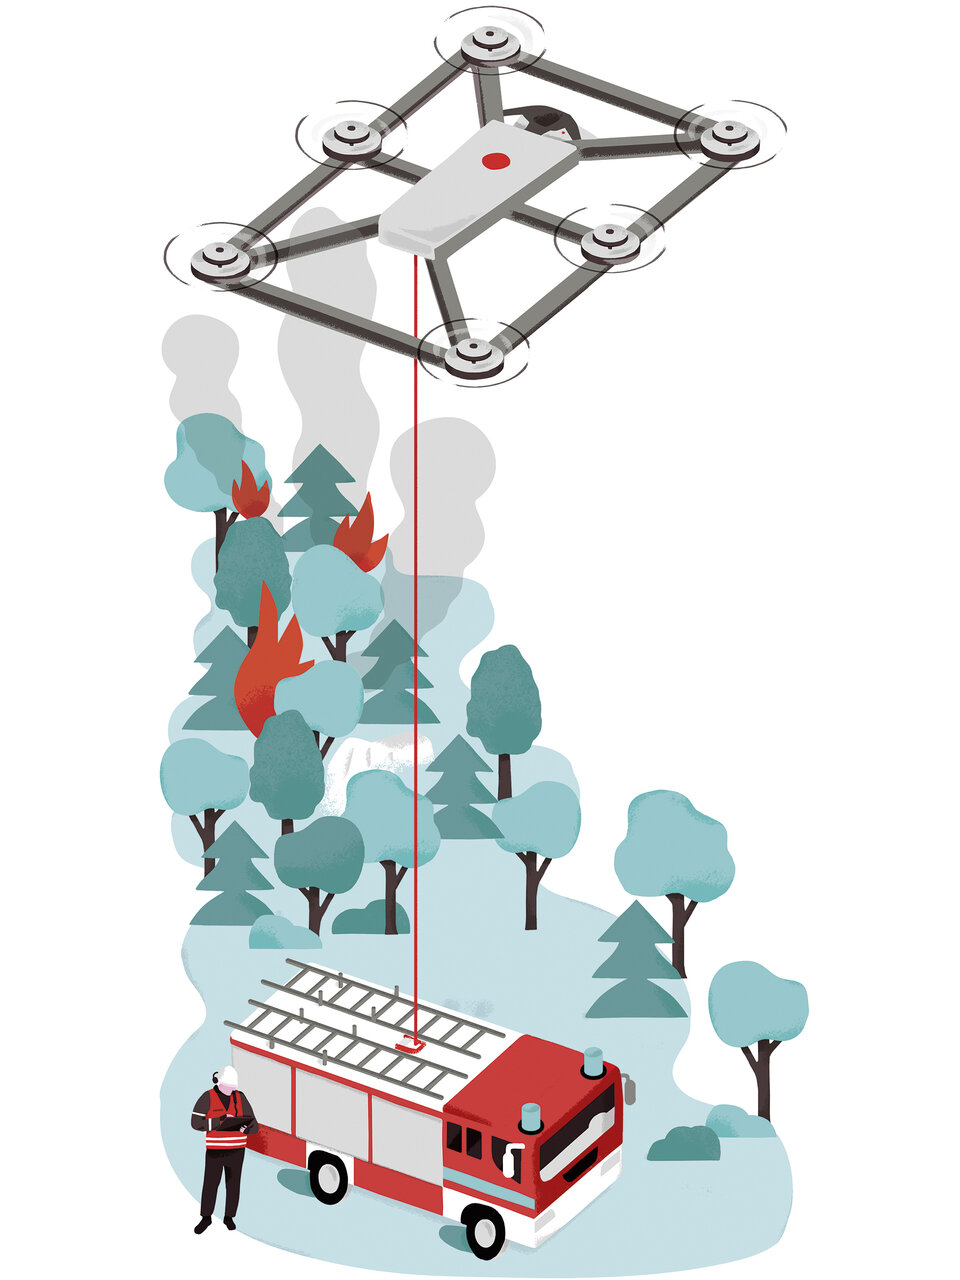 Illustration des Fotokite-Drohnen-Systems von Perspective Robotics